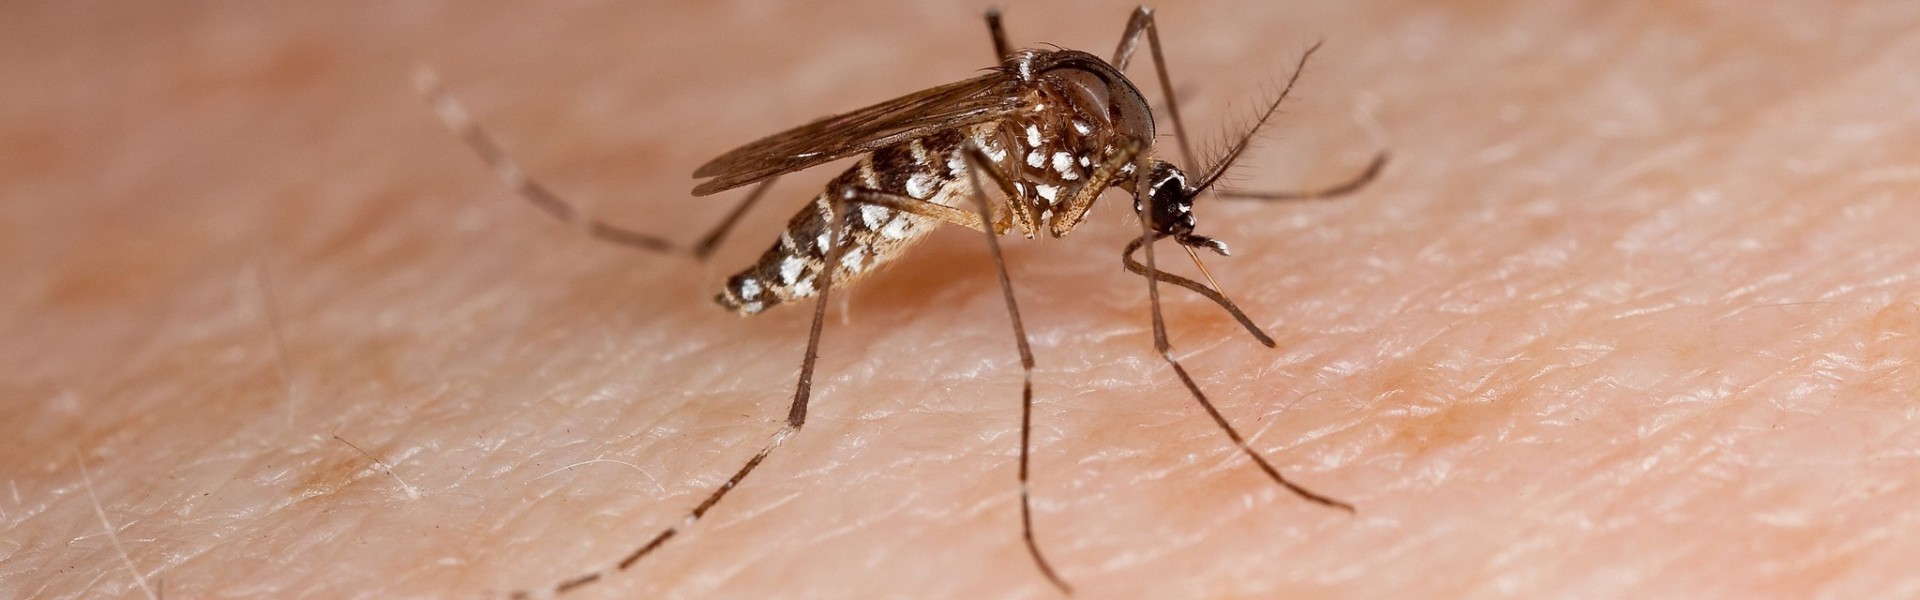 sedes aegypti, mosquito, dengue